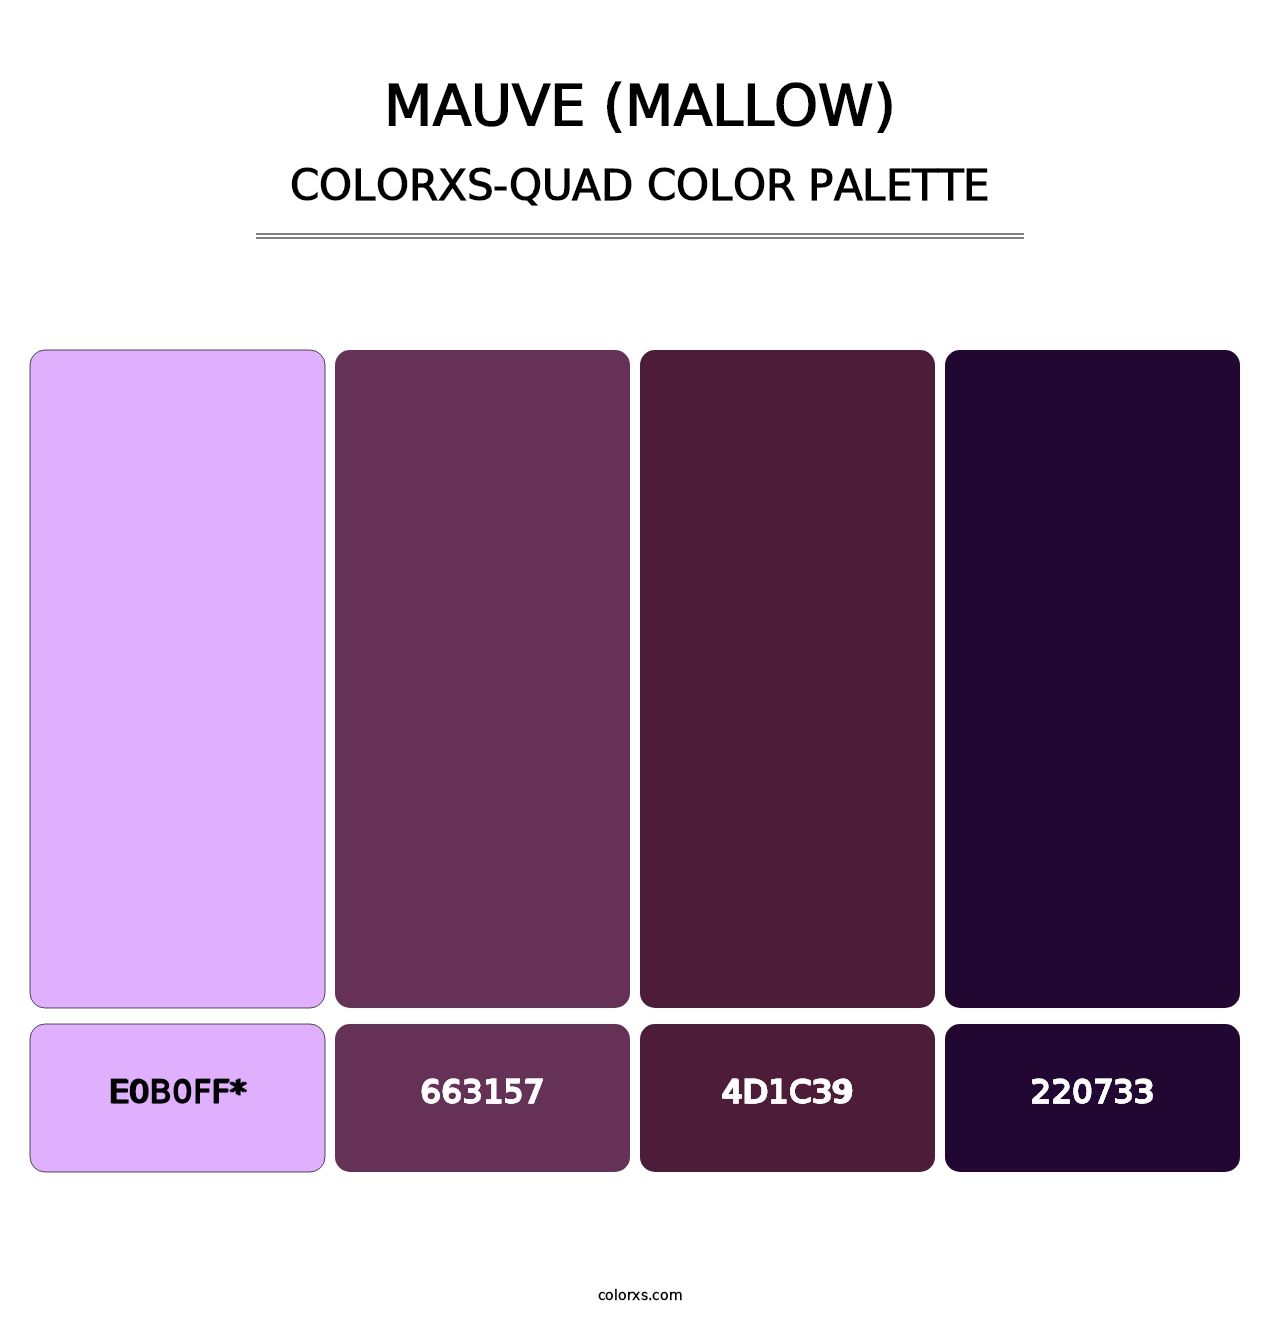 Mauve (Mallow) - Colorxs Quad Palette